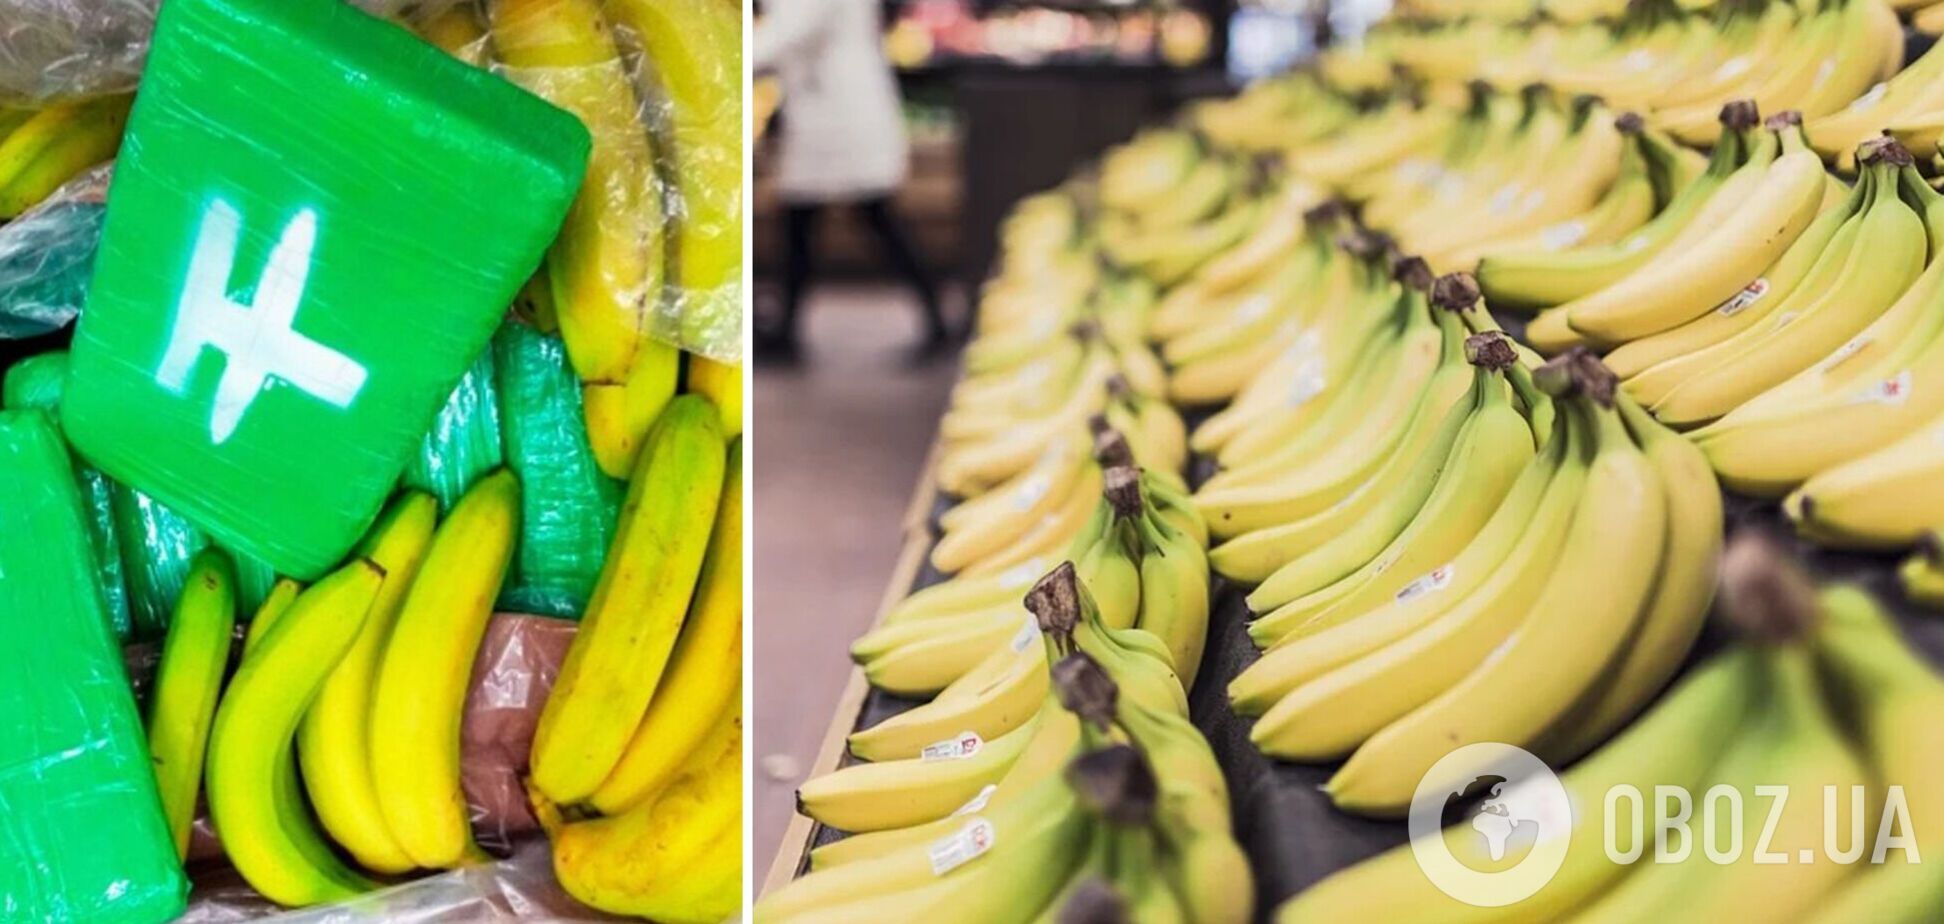 У чеському супермаркеті в ящиках з бананами знайшли 646 кг кокаїну. Фото